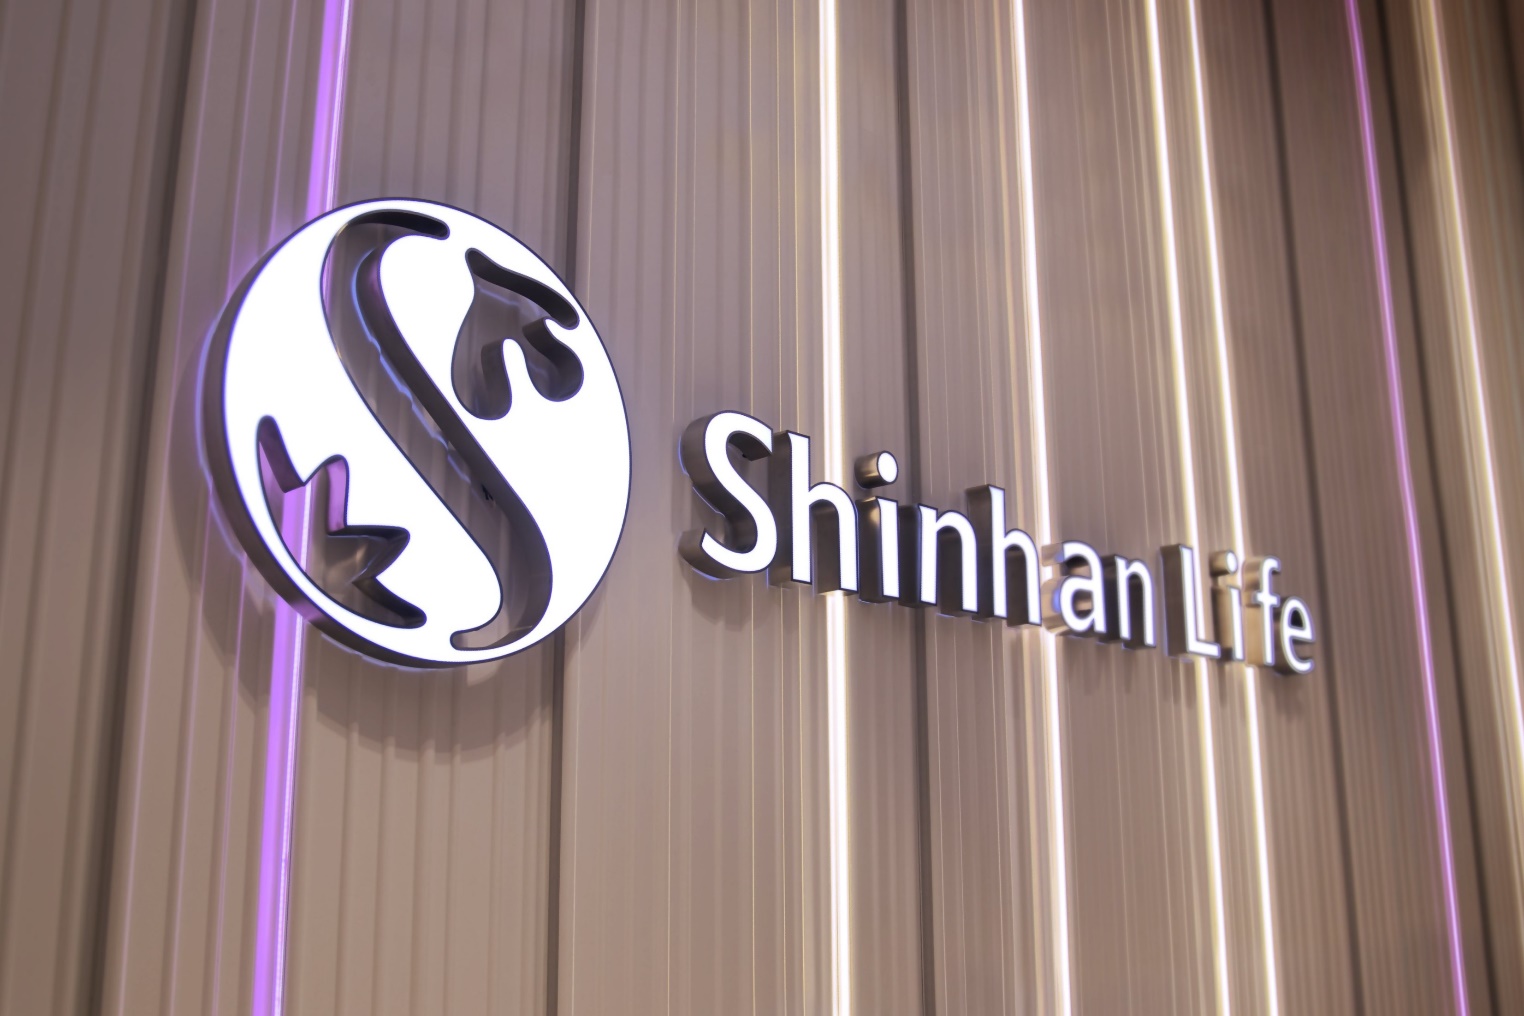 Shinhan Life là thương hiệu “tân binh” gia nhập thị trường bảo hiểm Việt Nam